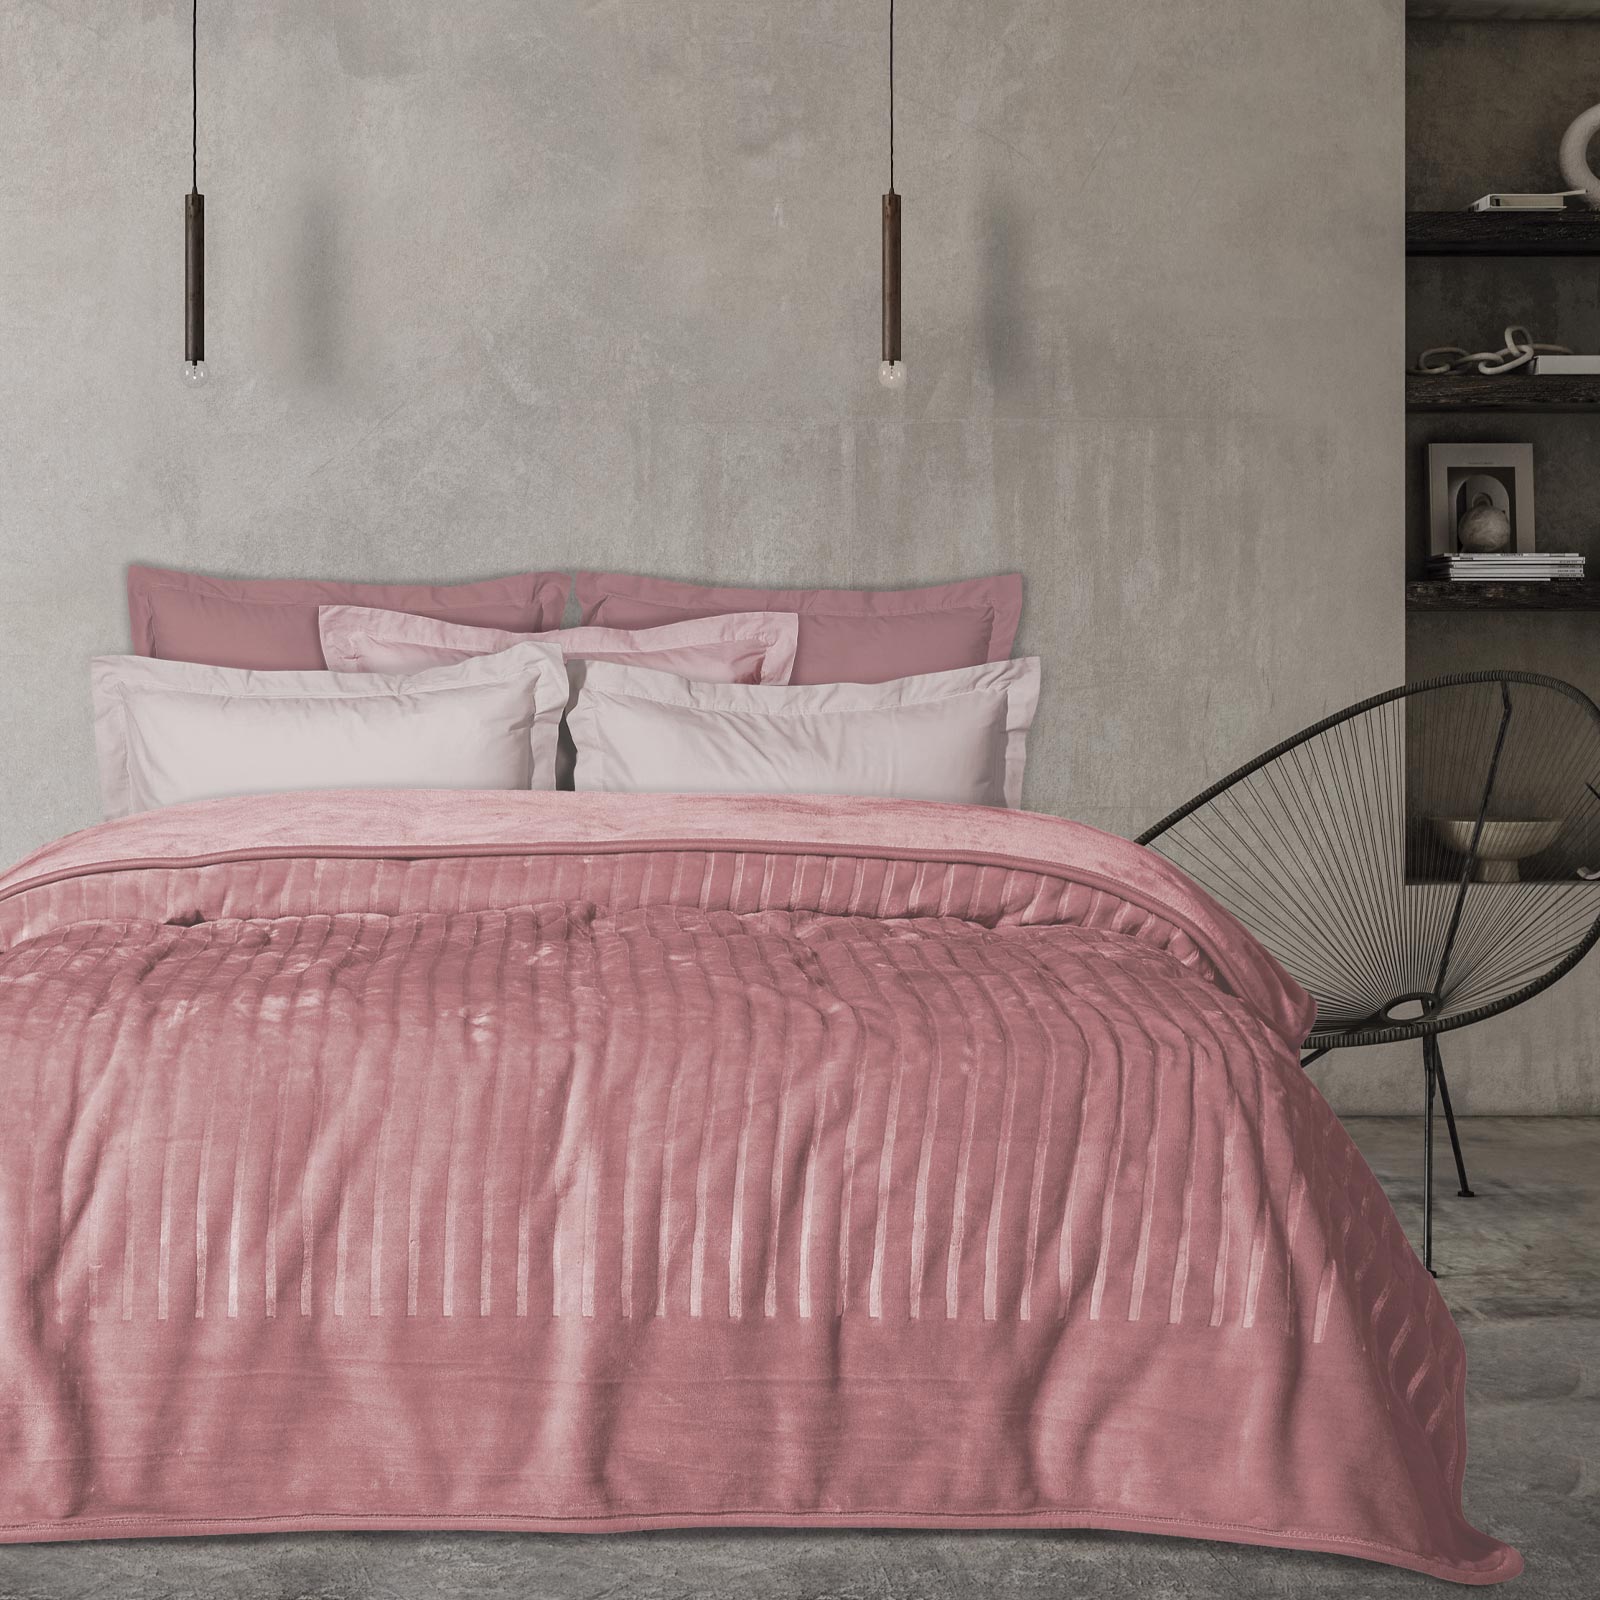 Κουβέρτα Βελουτέ Ανάγλυφη Υπέρδιπλη 220×240εκ. Blankets 1352 Ροζ Das Home (Ύφασμα: Βελούδο, Χρώμα: Ροζ, Μέγεθος: Υπέρδιπλα) – Das Home – 420577721352